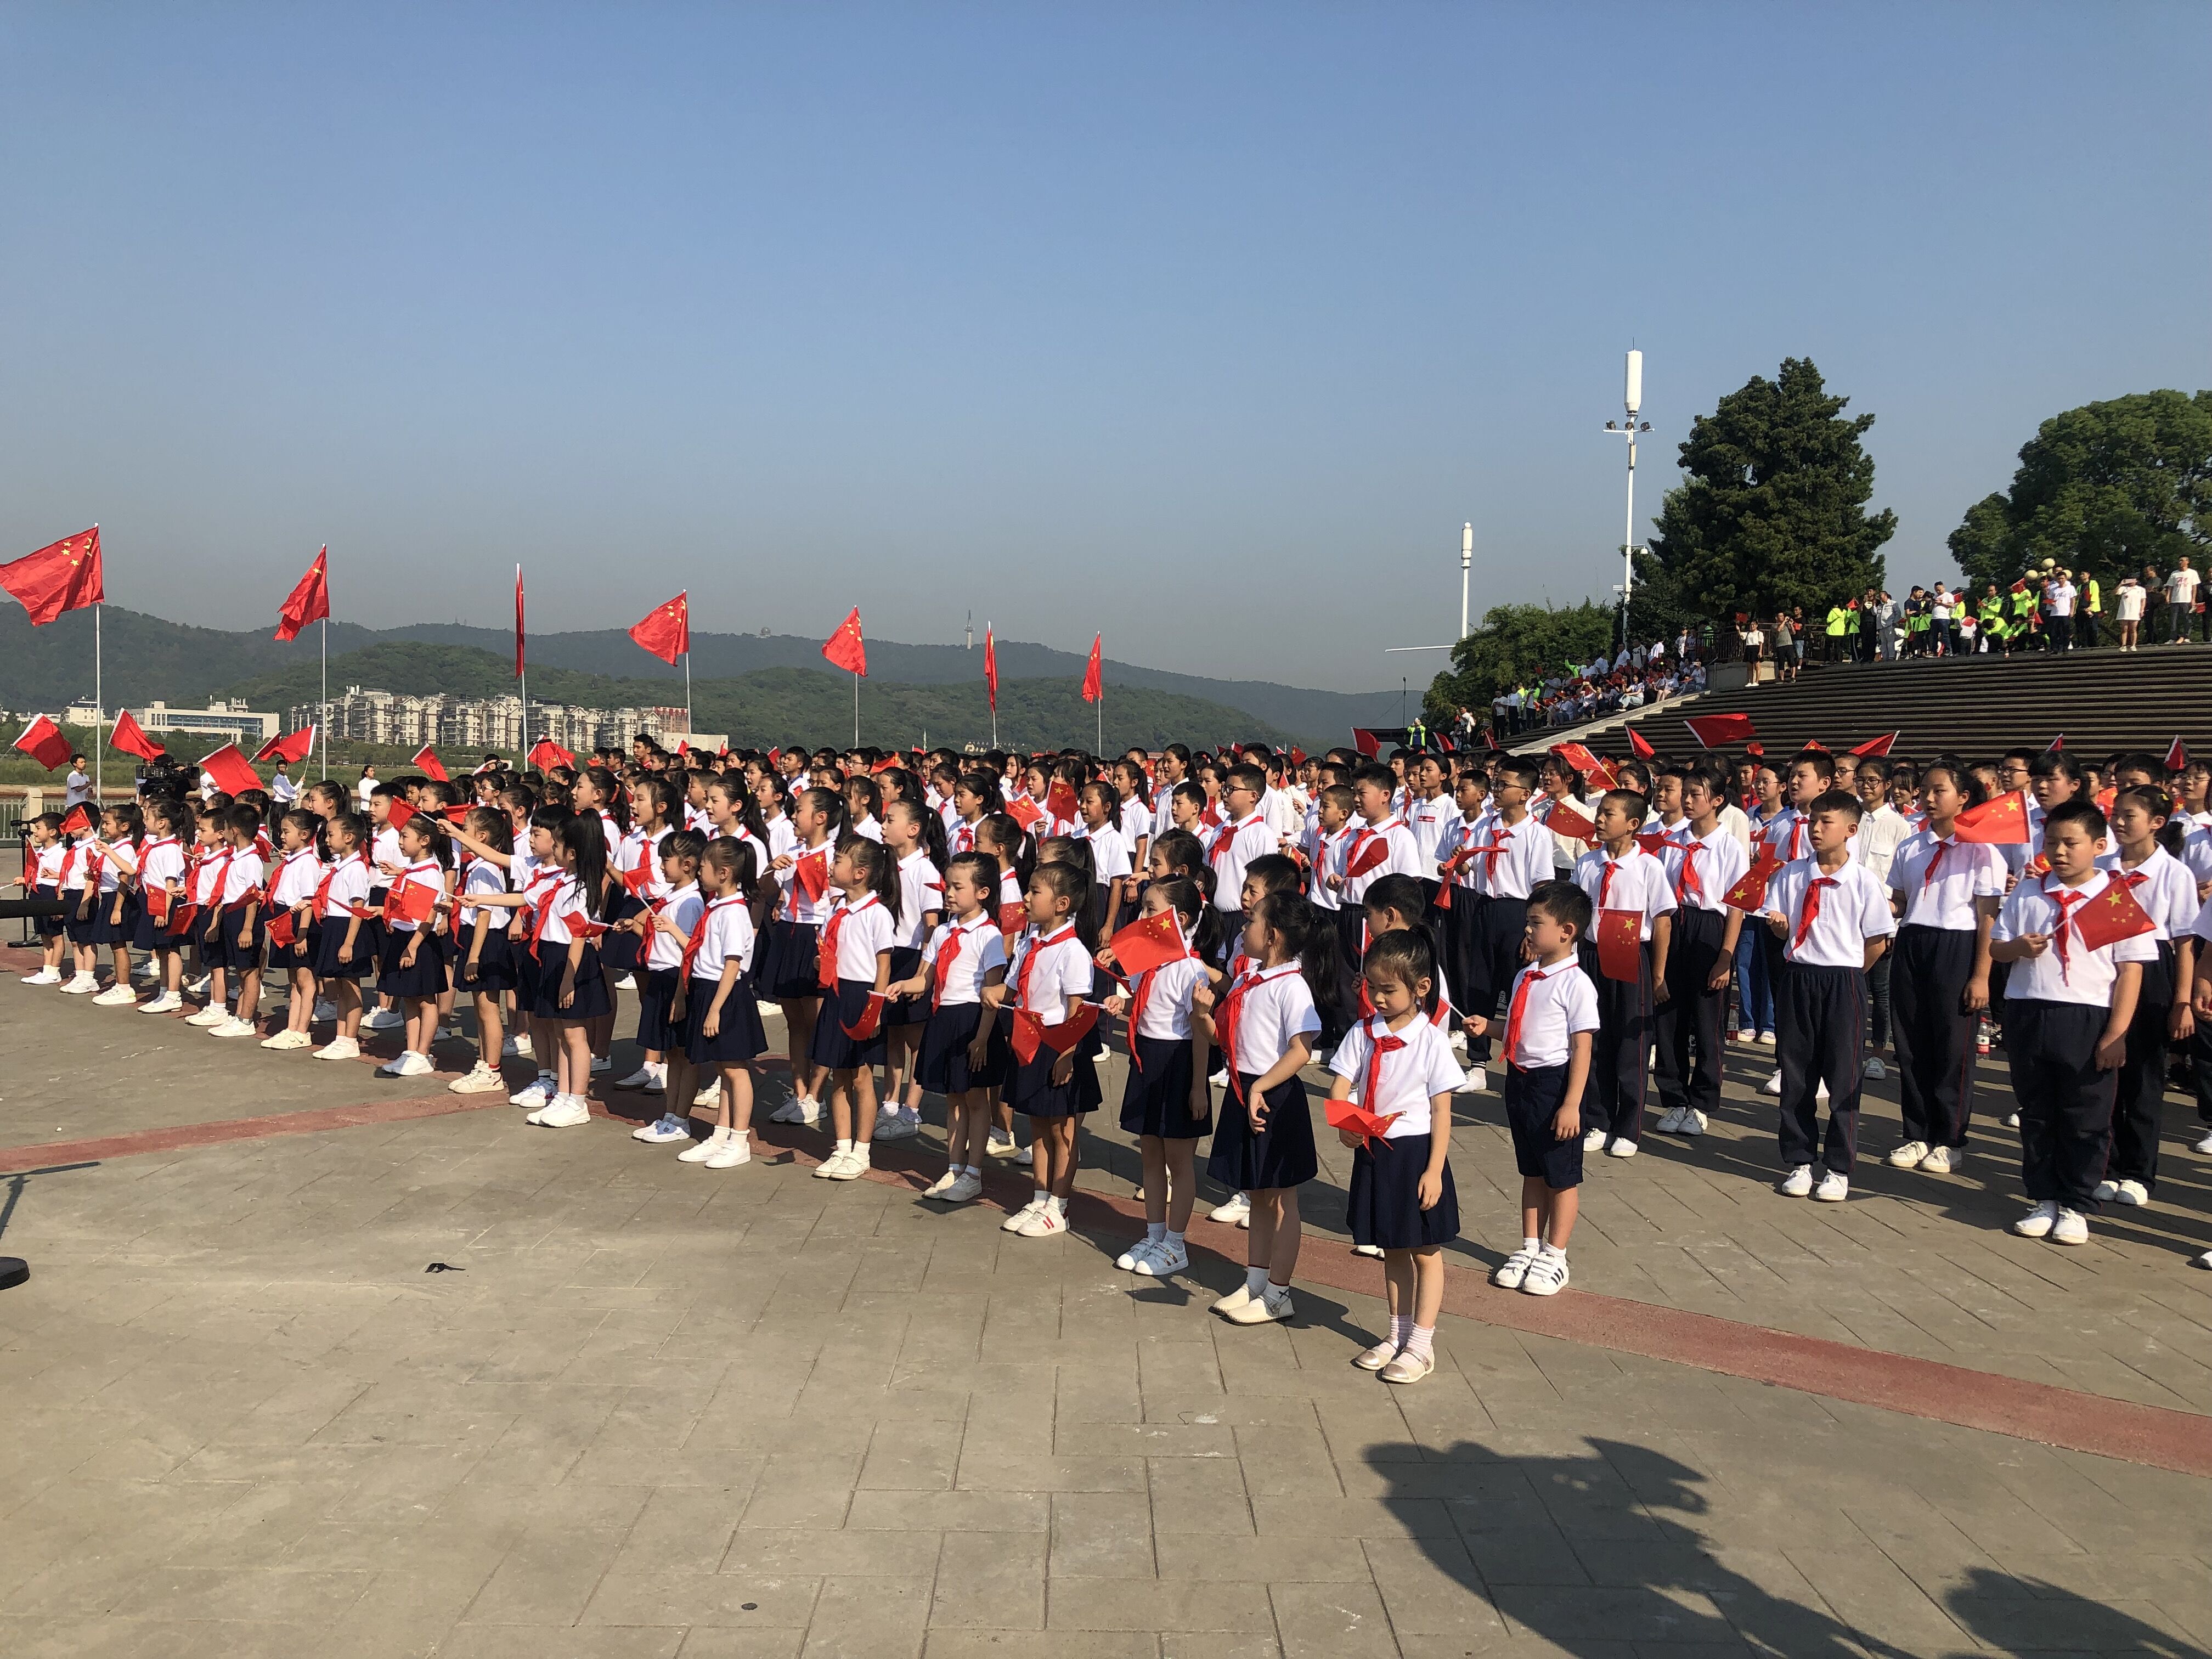 今日，千名师生代表齐聚橘子洲头，用歌声献礼新中国成立70周年。图片均为长沙晚报全媒体记者 钱娟 拍摄